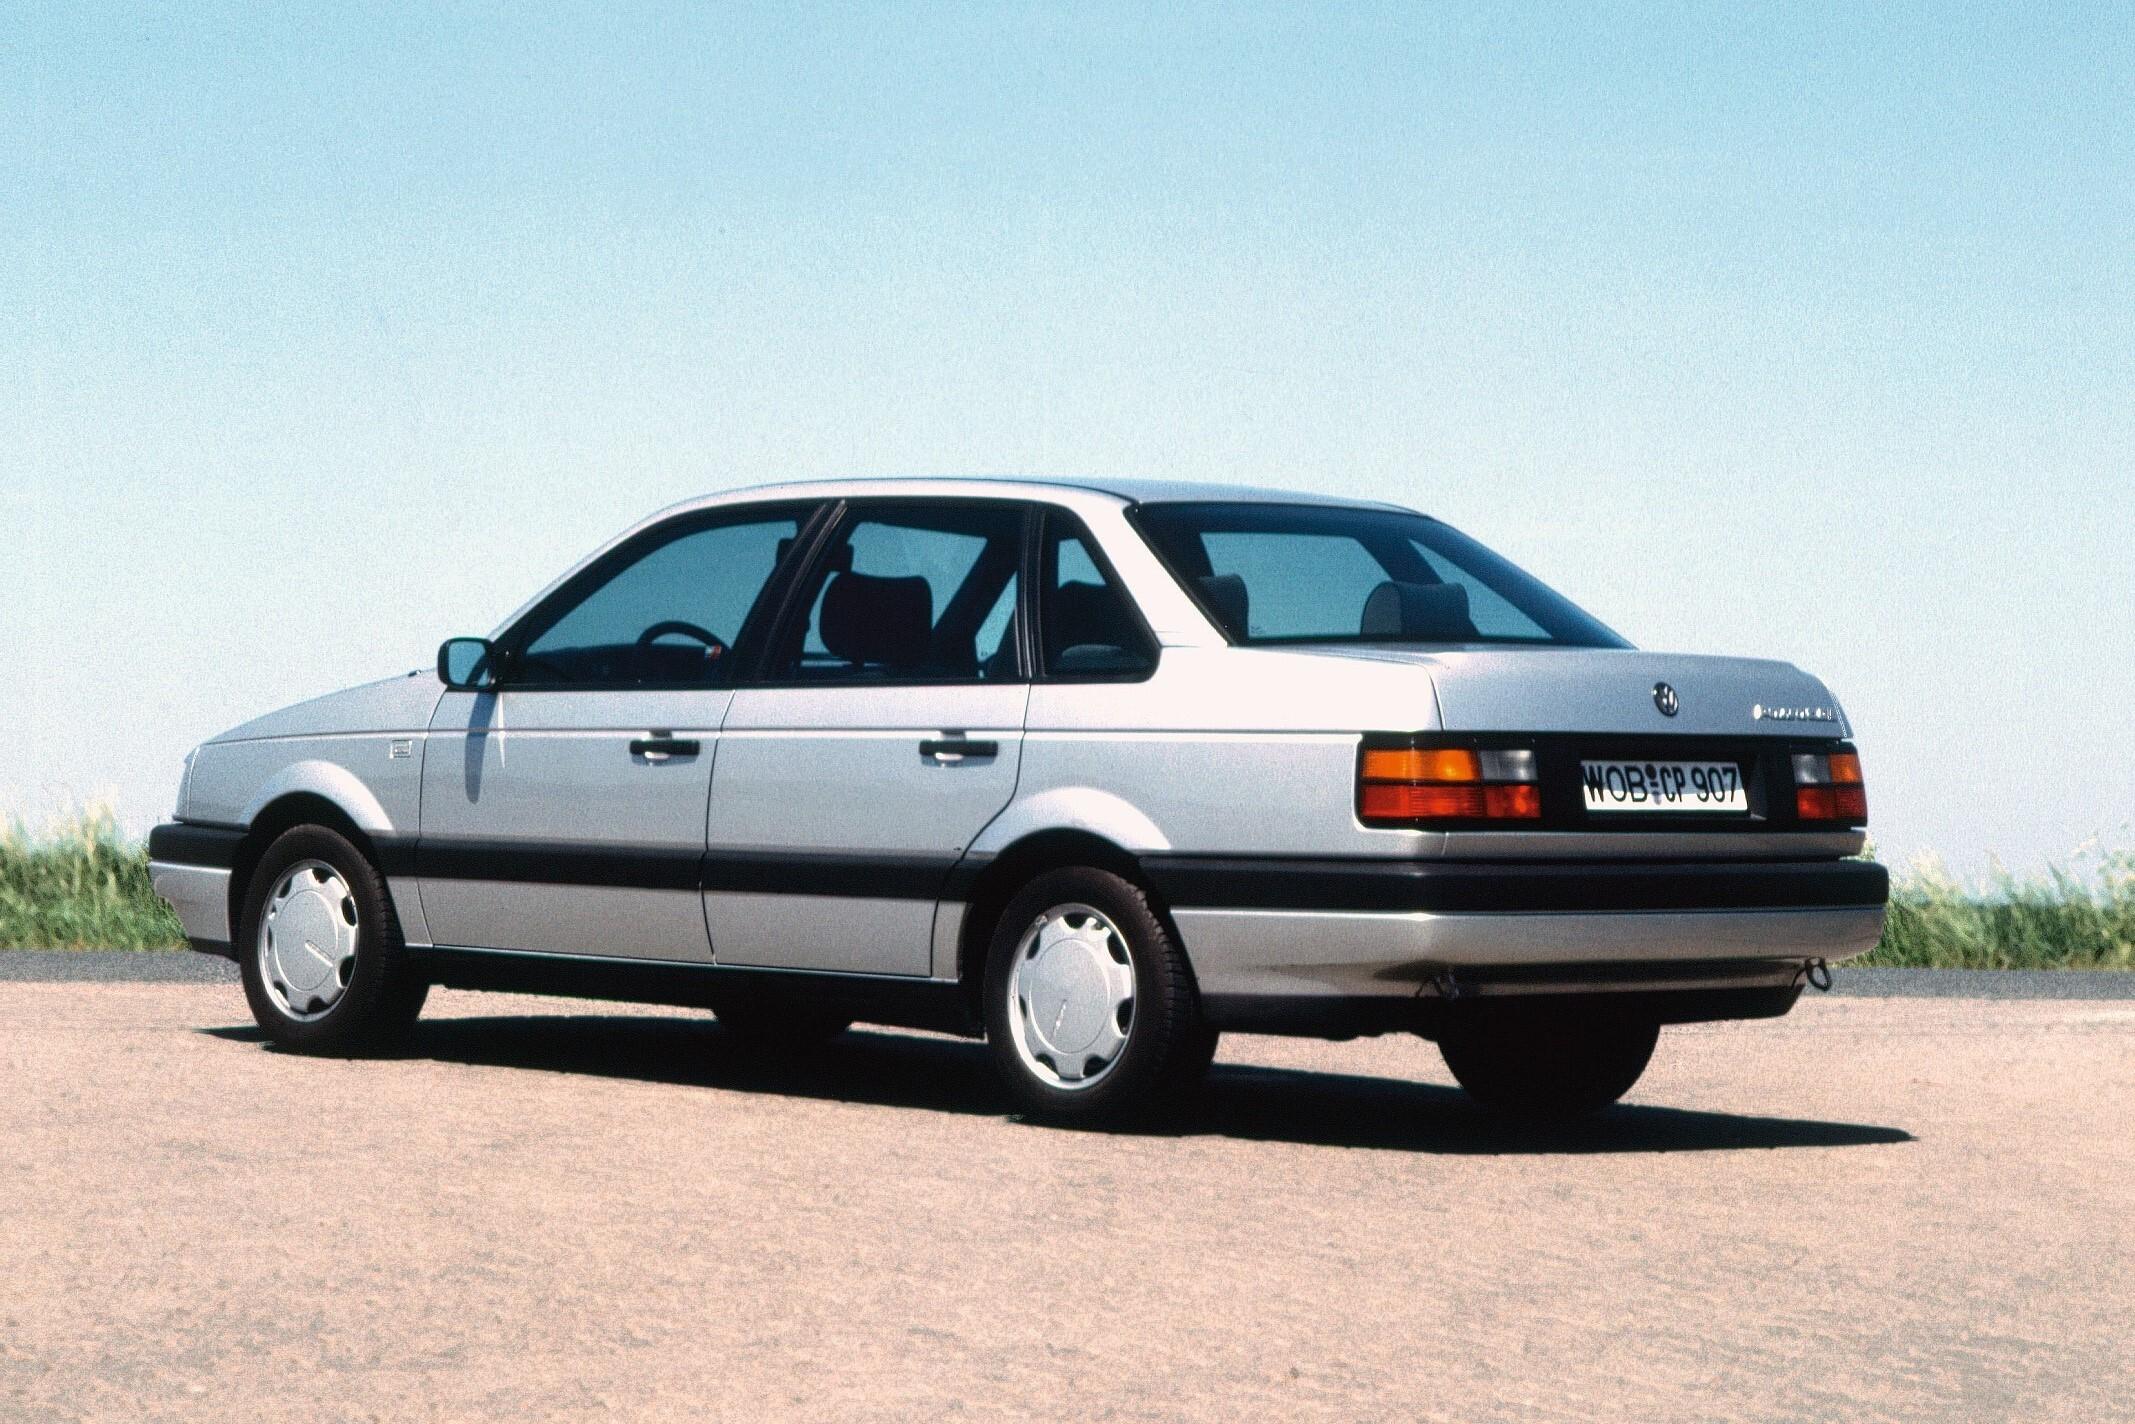 Купить фольксваген в4. VW Passat b3 седан. Фольксваген Пассат б3 седан. Volkswagen Passat b3 седан 1.8. Volkswagen Passat b3 седан 1990.